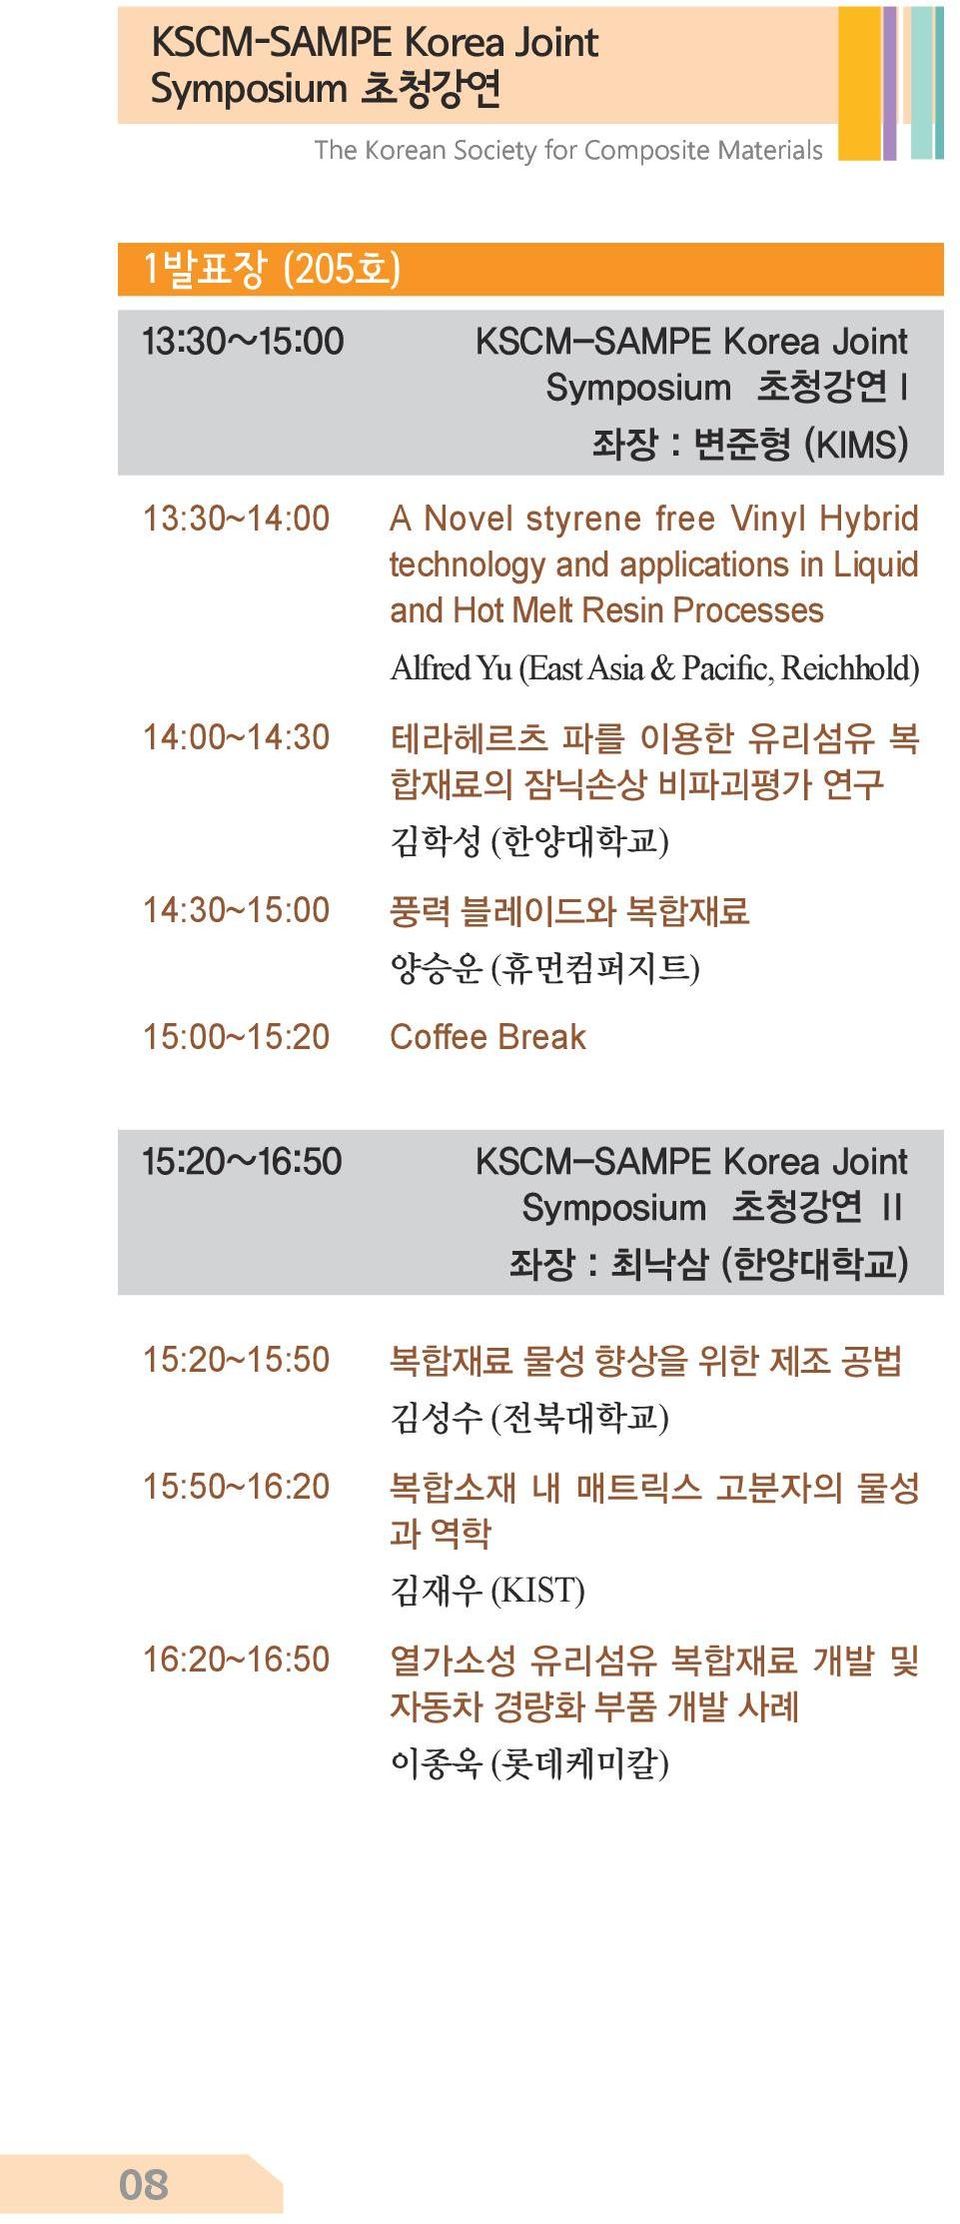 테라헤르츠 파를 이용한 유리섬유 복 합재료의 잠닉손상 비파괴평가 연구 ( ) 14:30~15:00 풍력 블레이드와 복합재료 ( ) 15:00~15:20 Coffee Break 15:20~16:50 KSCM-SAMPE Korea Joint Symposium 초청강연 Ⅱ